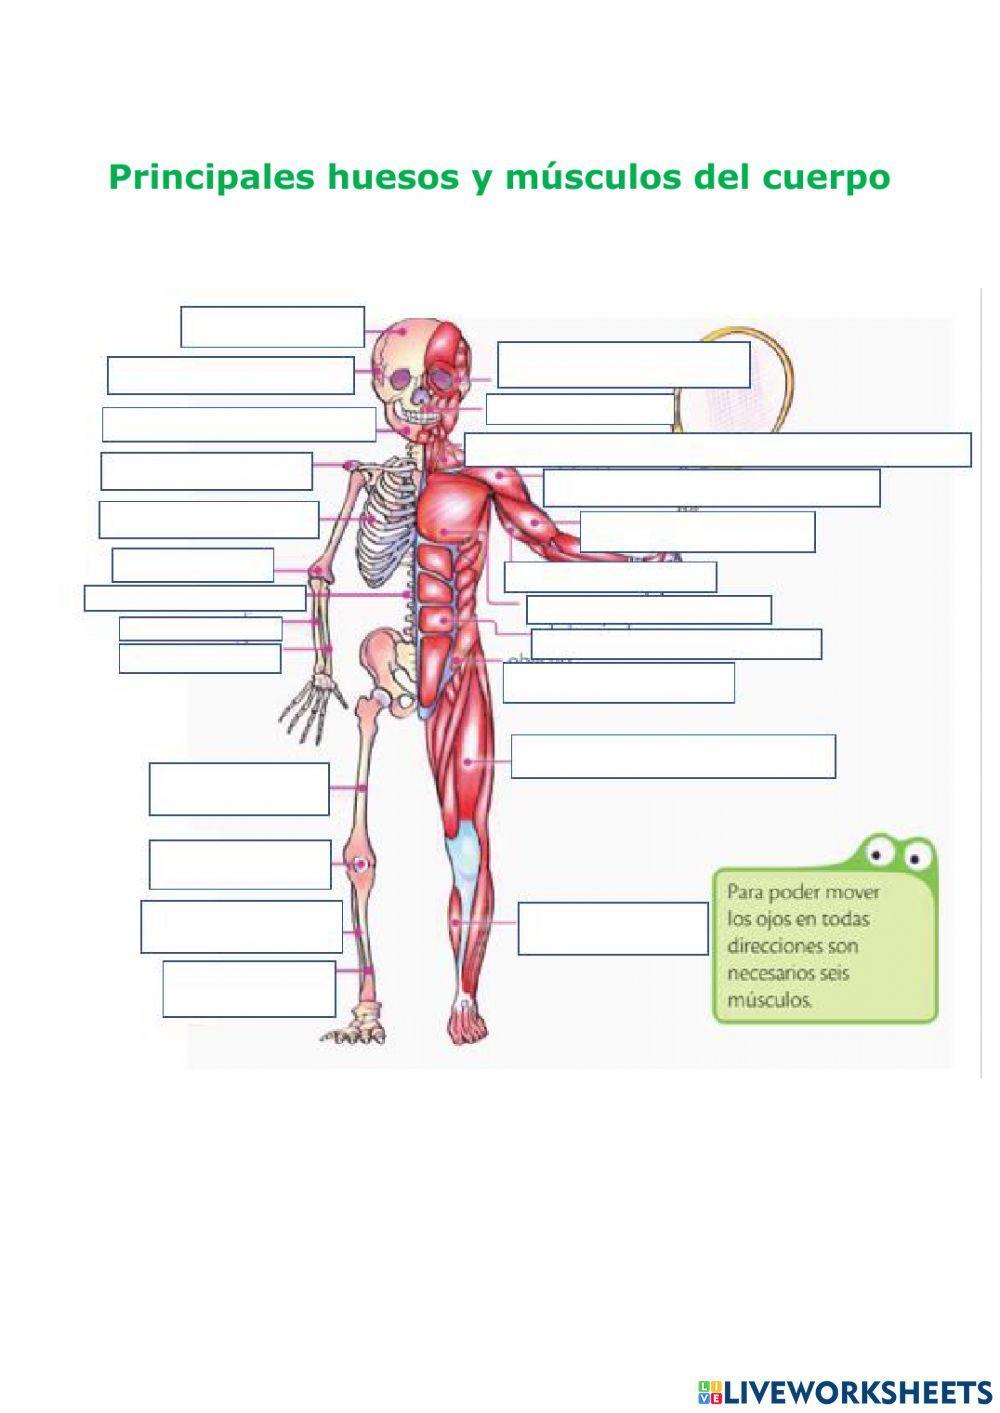 Principales huesos y músculos del cuerpo